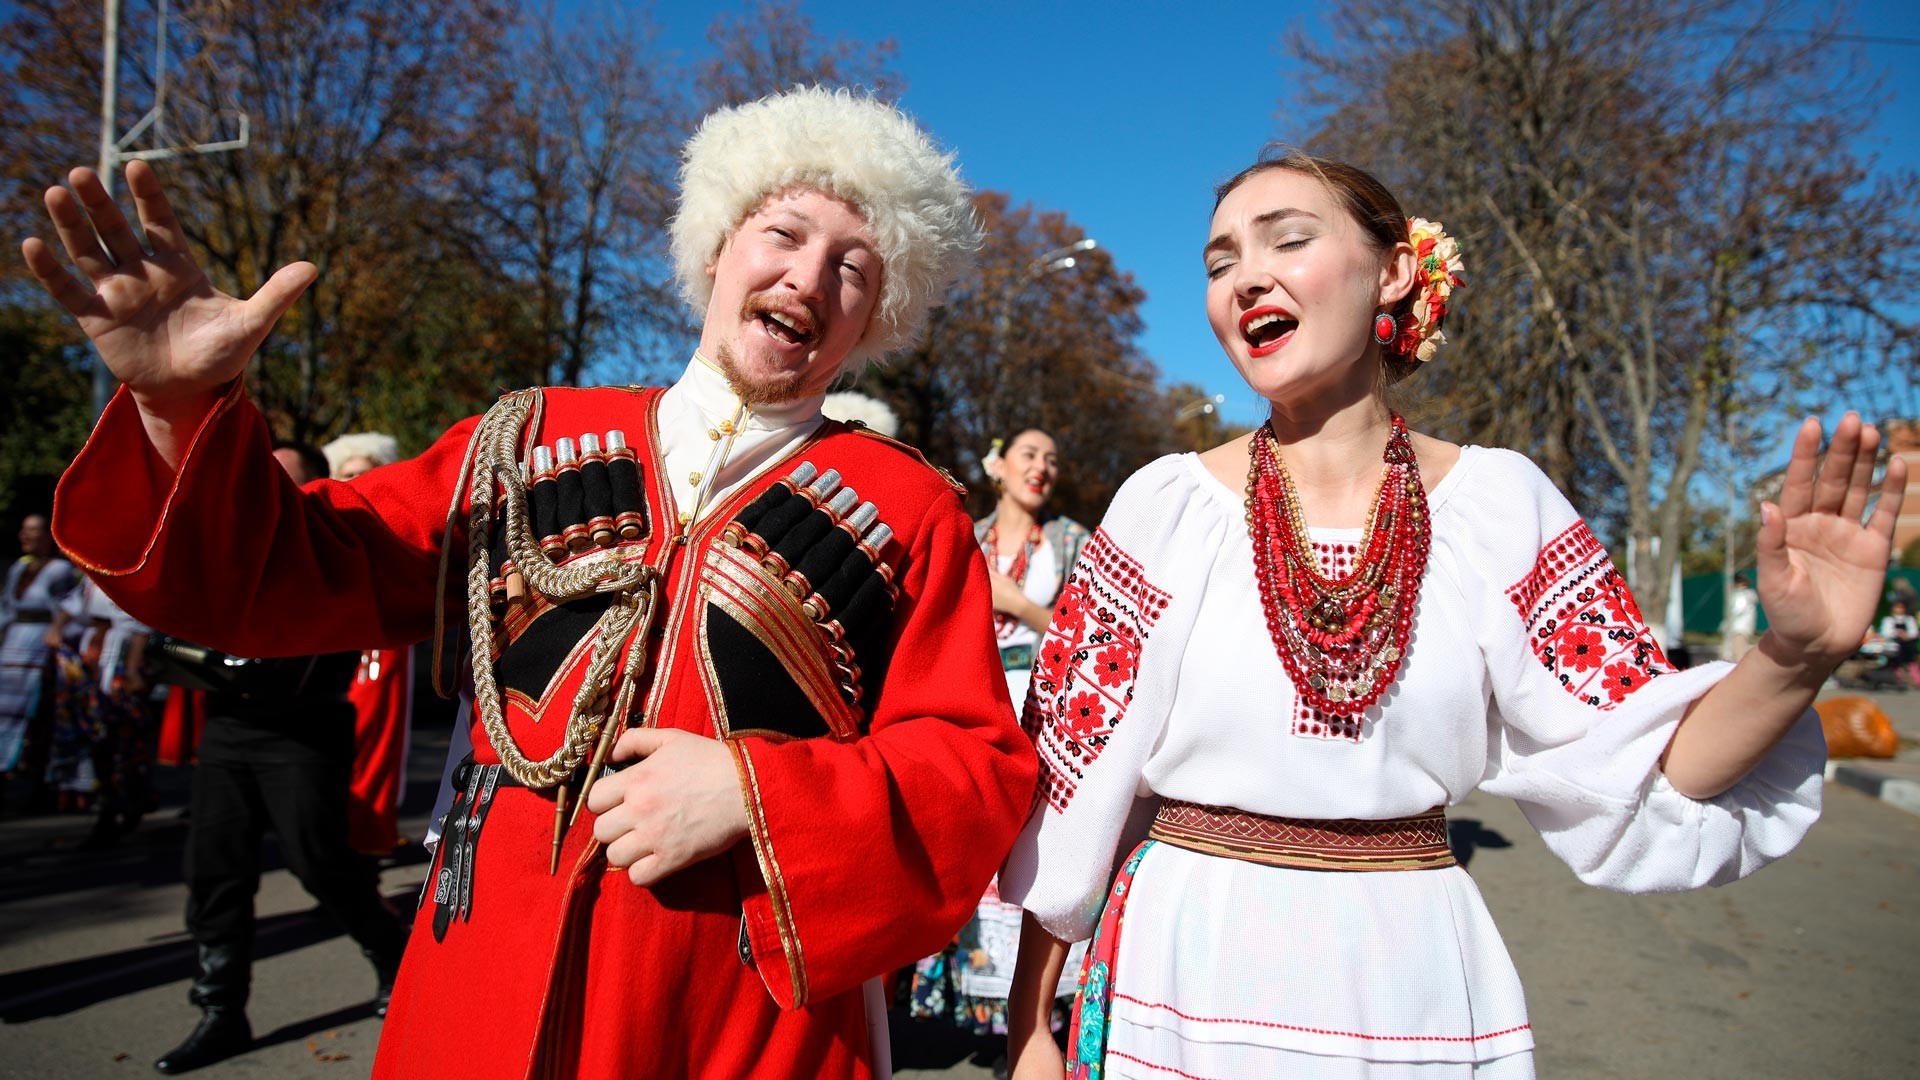 Ansambel lagu Cossack "Krinitsa" di festival budaya Cossack "Benteng Aleksandrr" di Krasnodar Krai.